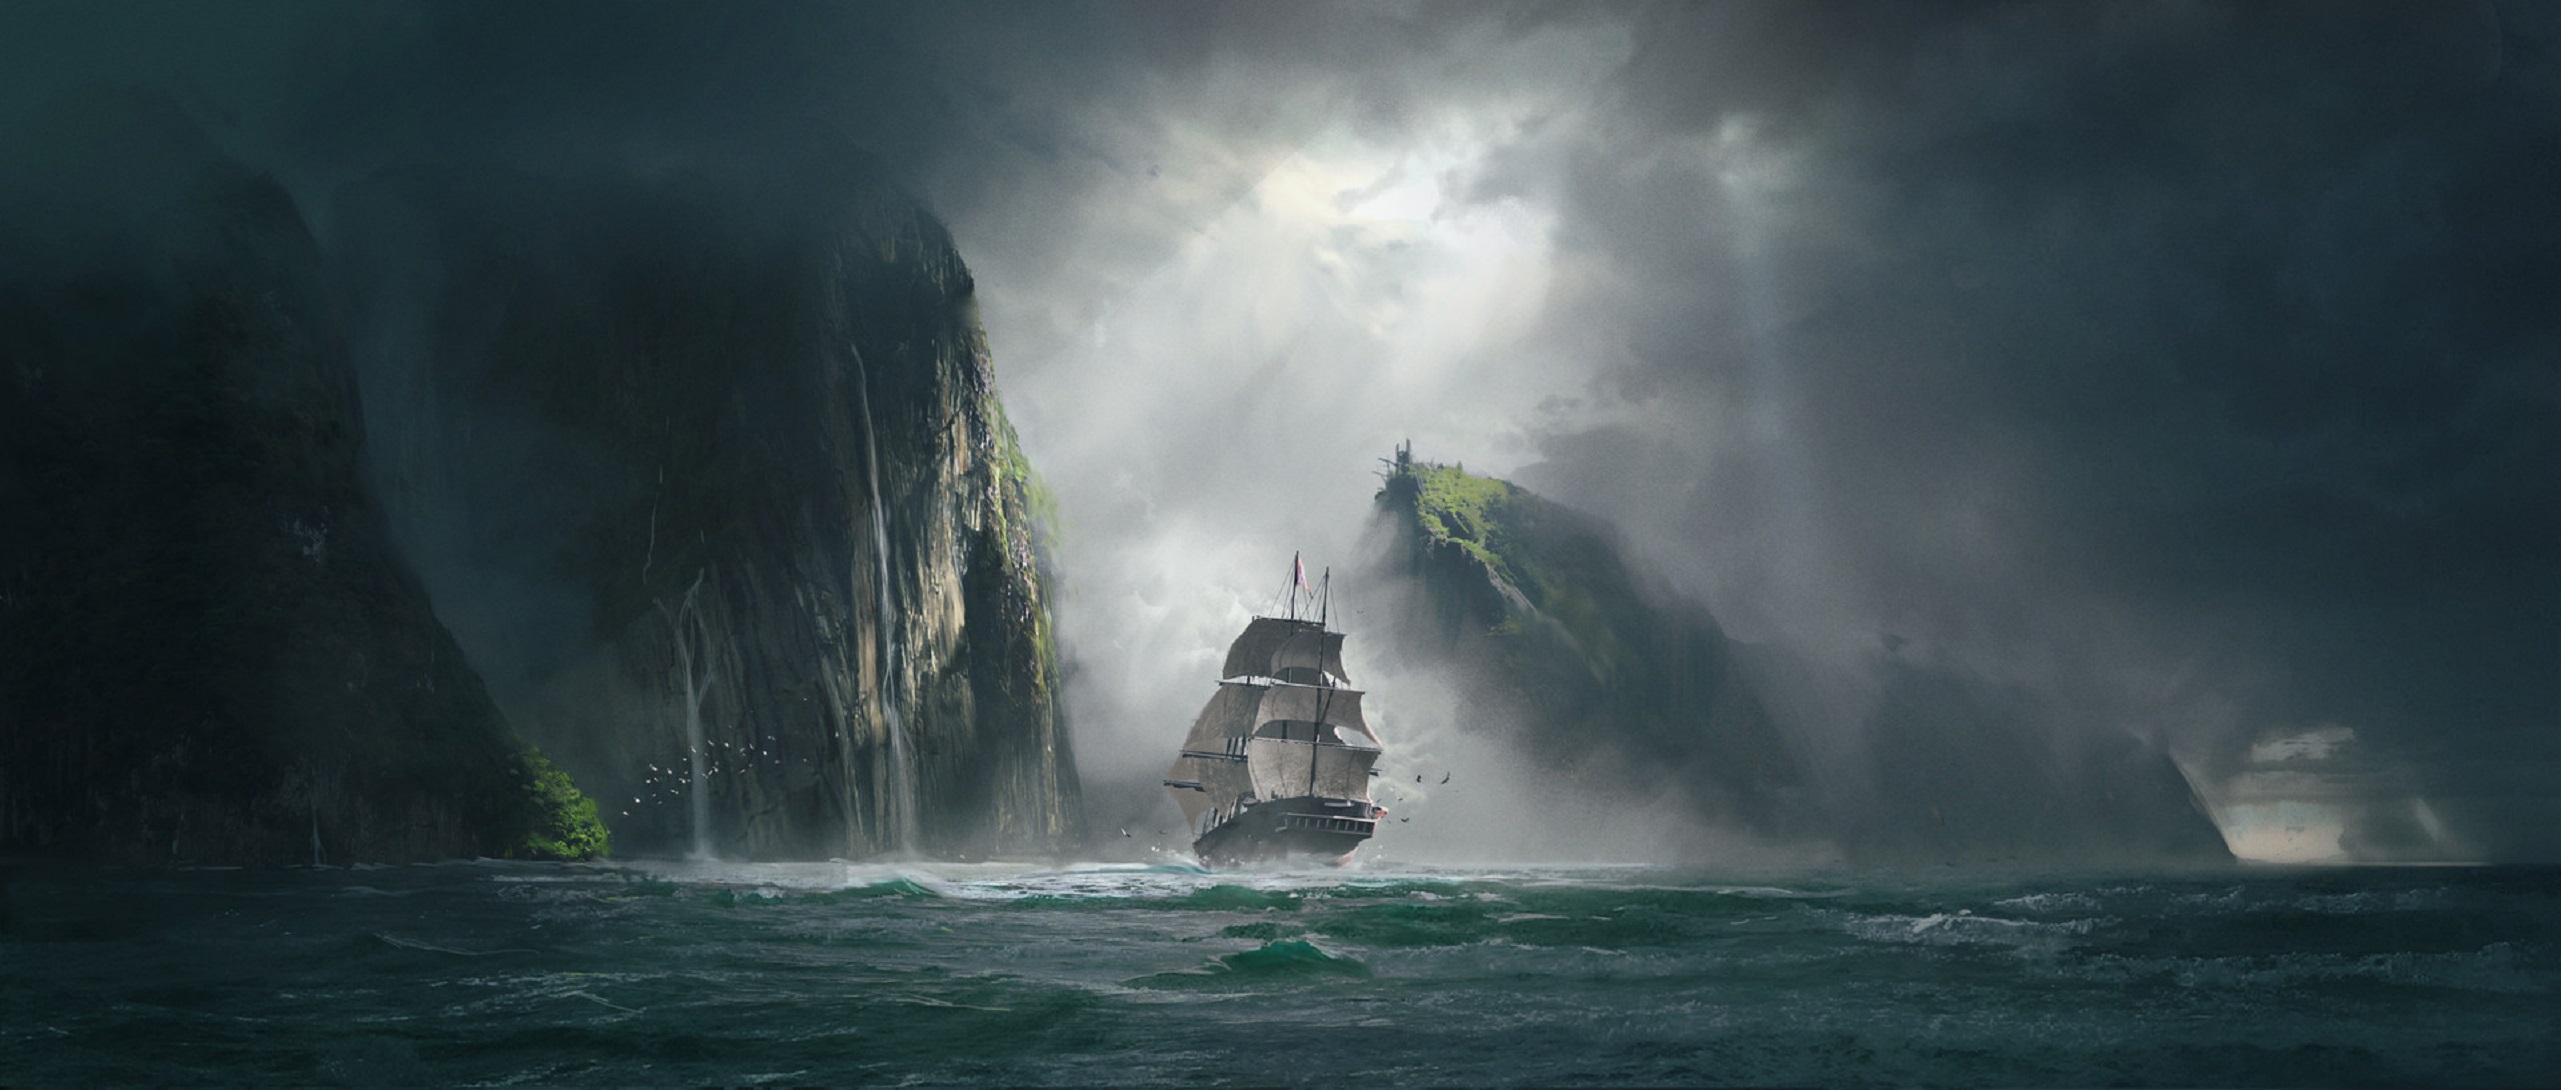 fantasy, ship, sailing, sea, storm